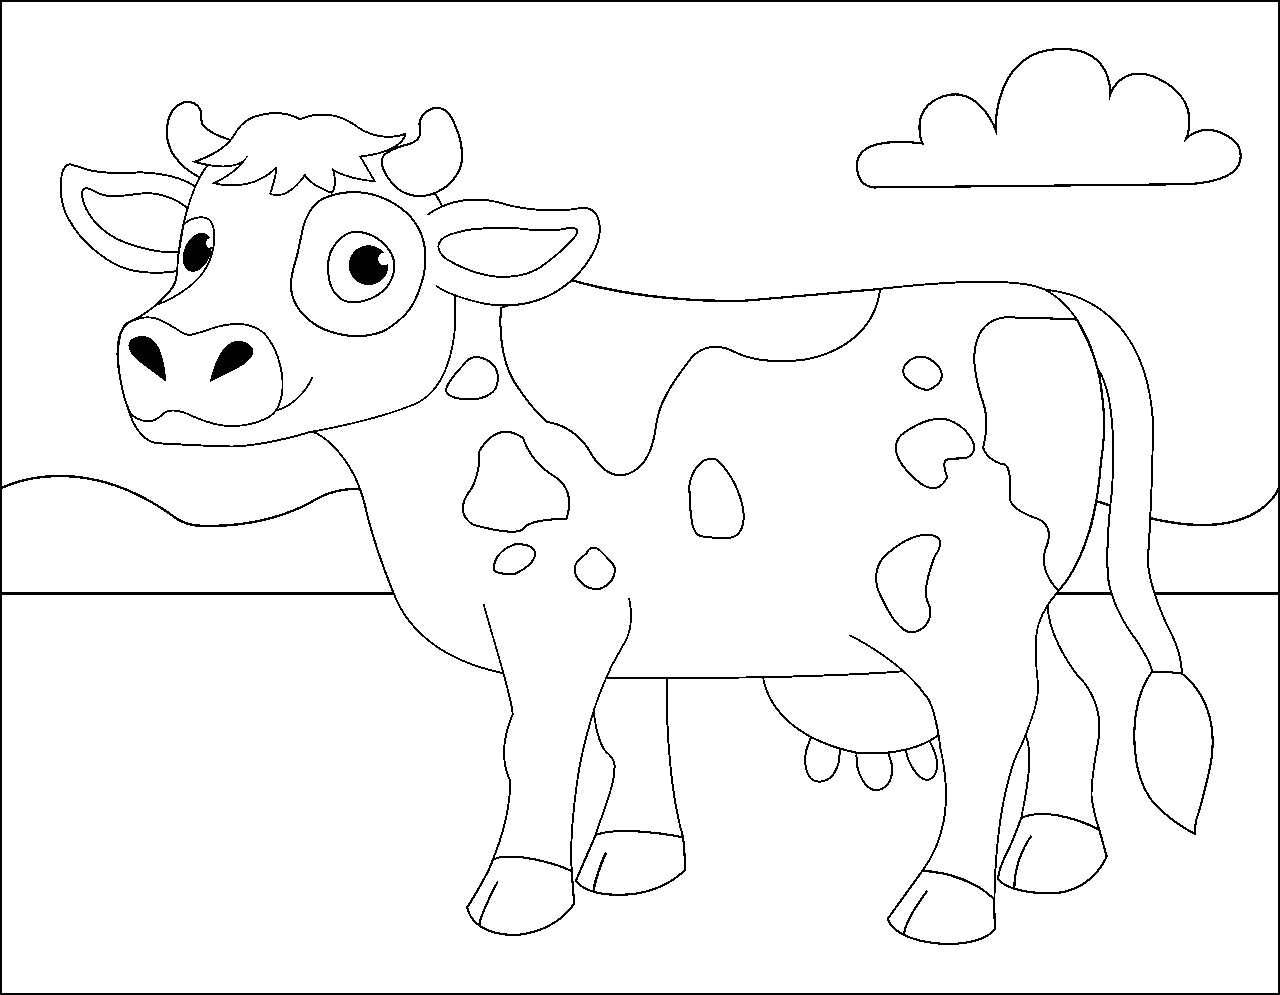 Disegno da colorare di mucca per bambini